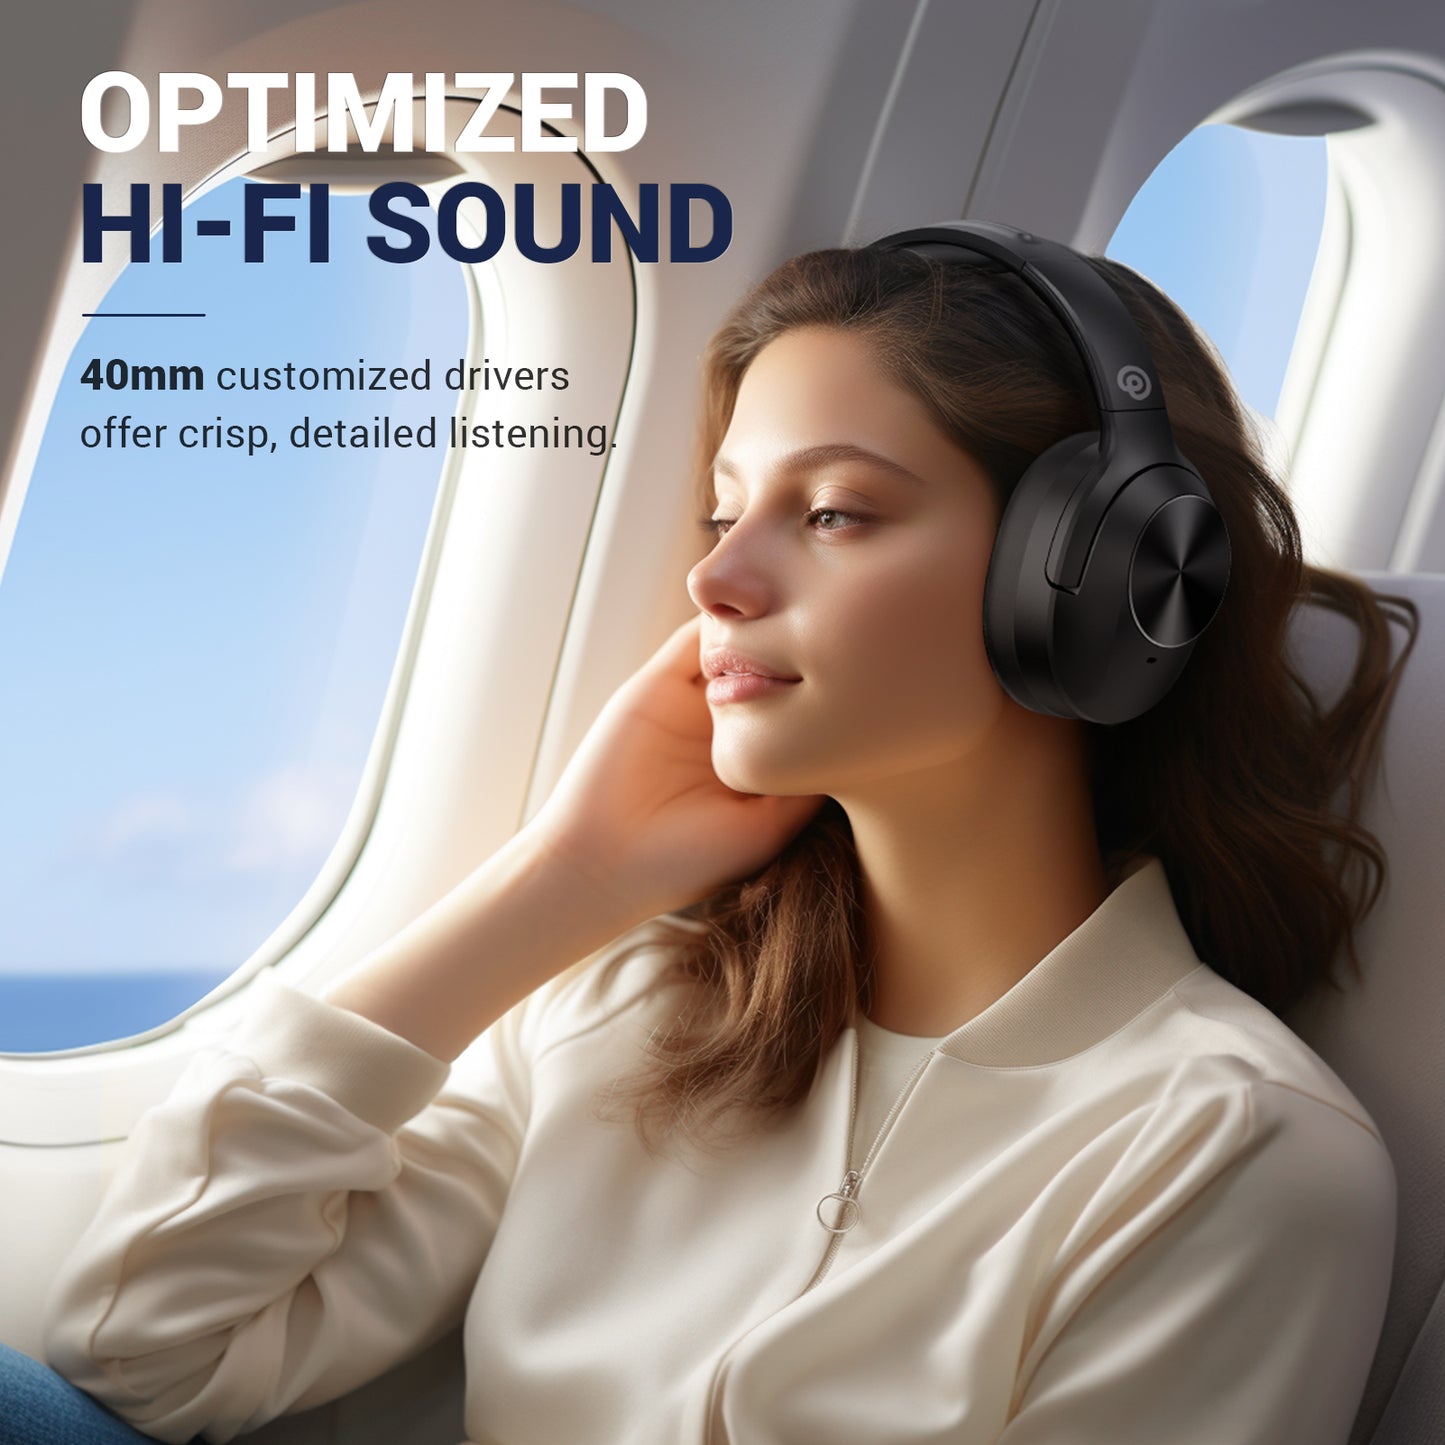 vibeadio Hybrid Active Noise Cancelling Headphones